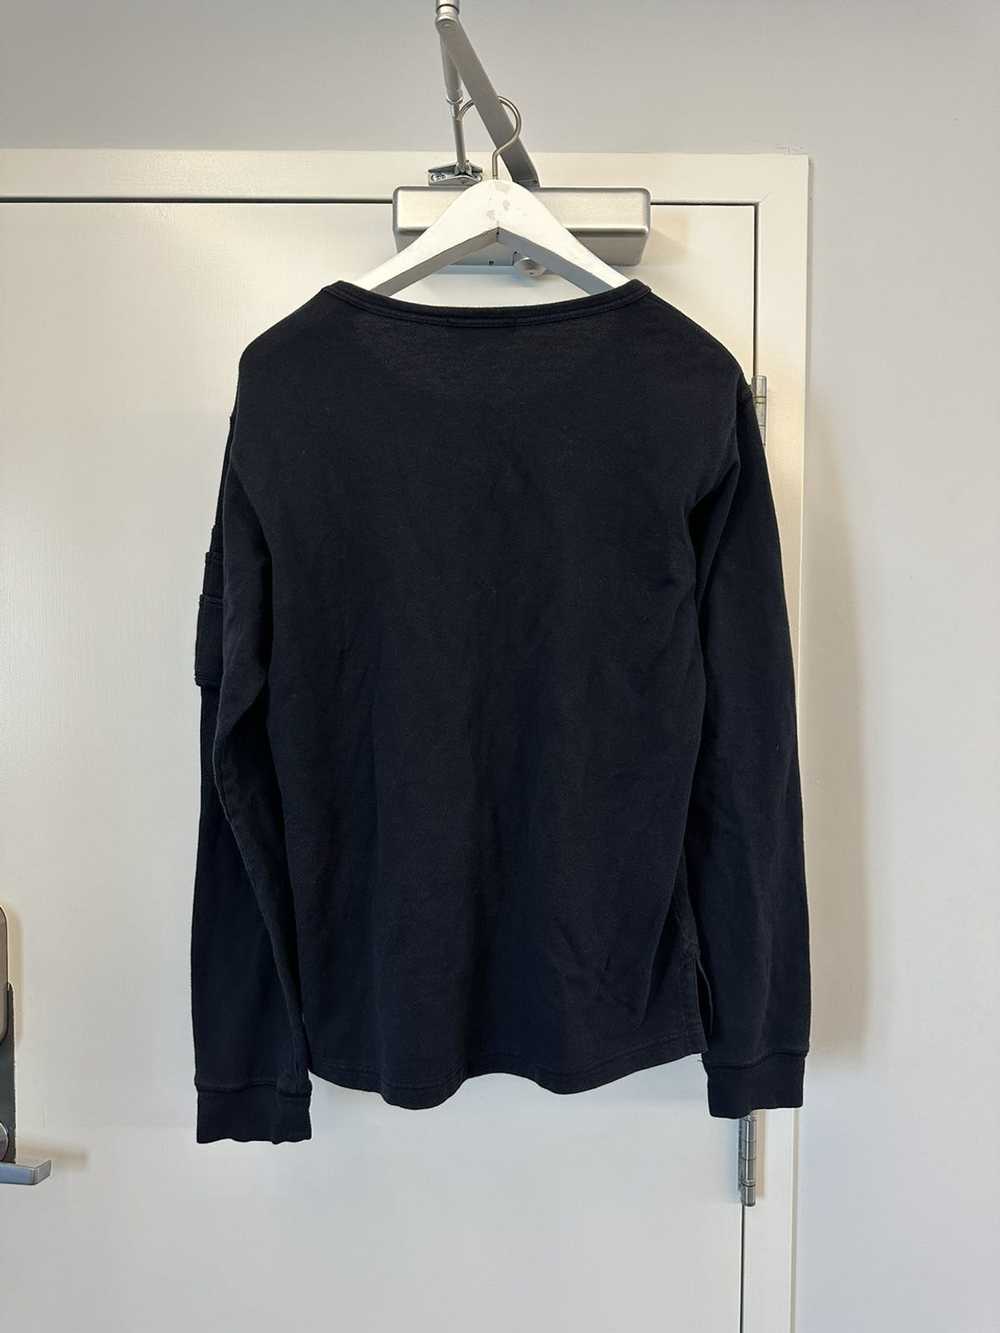 Yohji Yamamoto MA-1 sweater - image 2